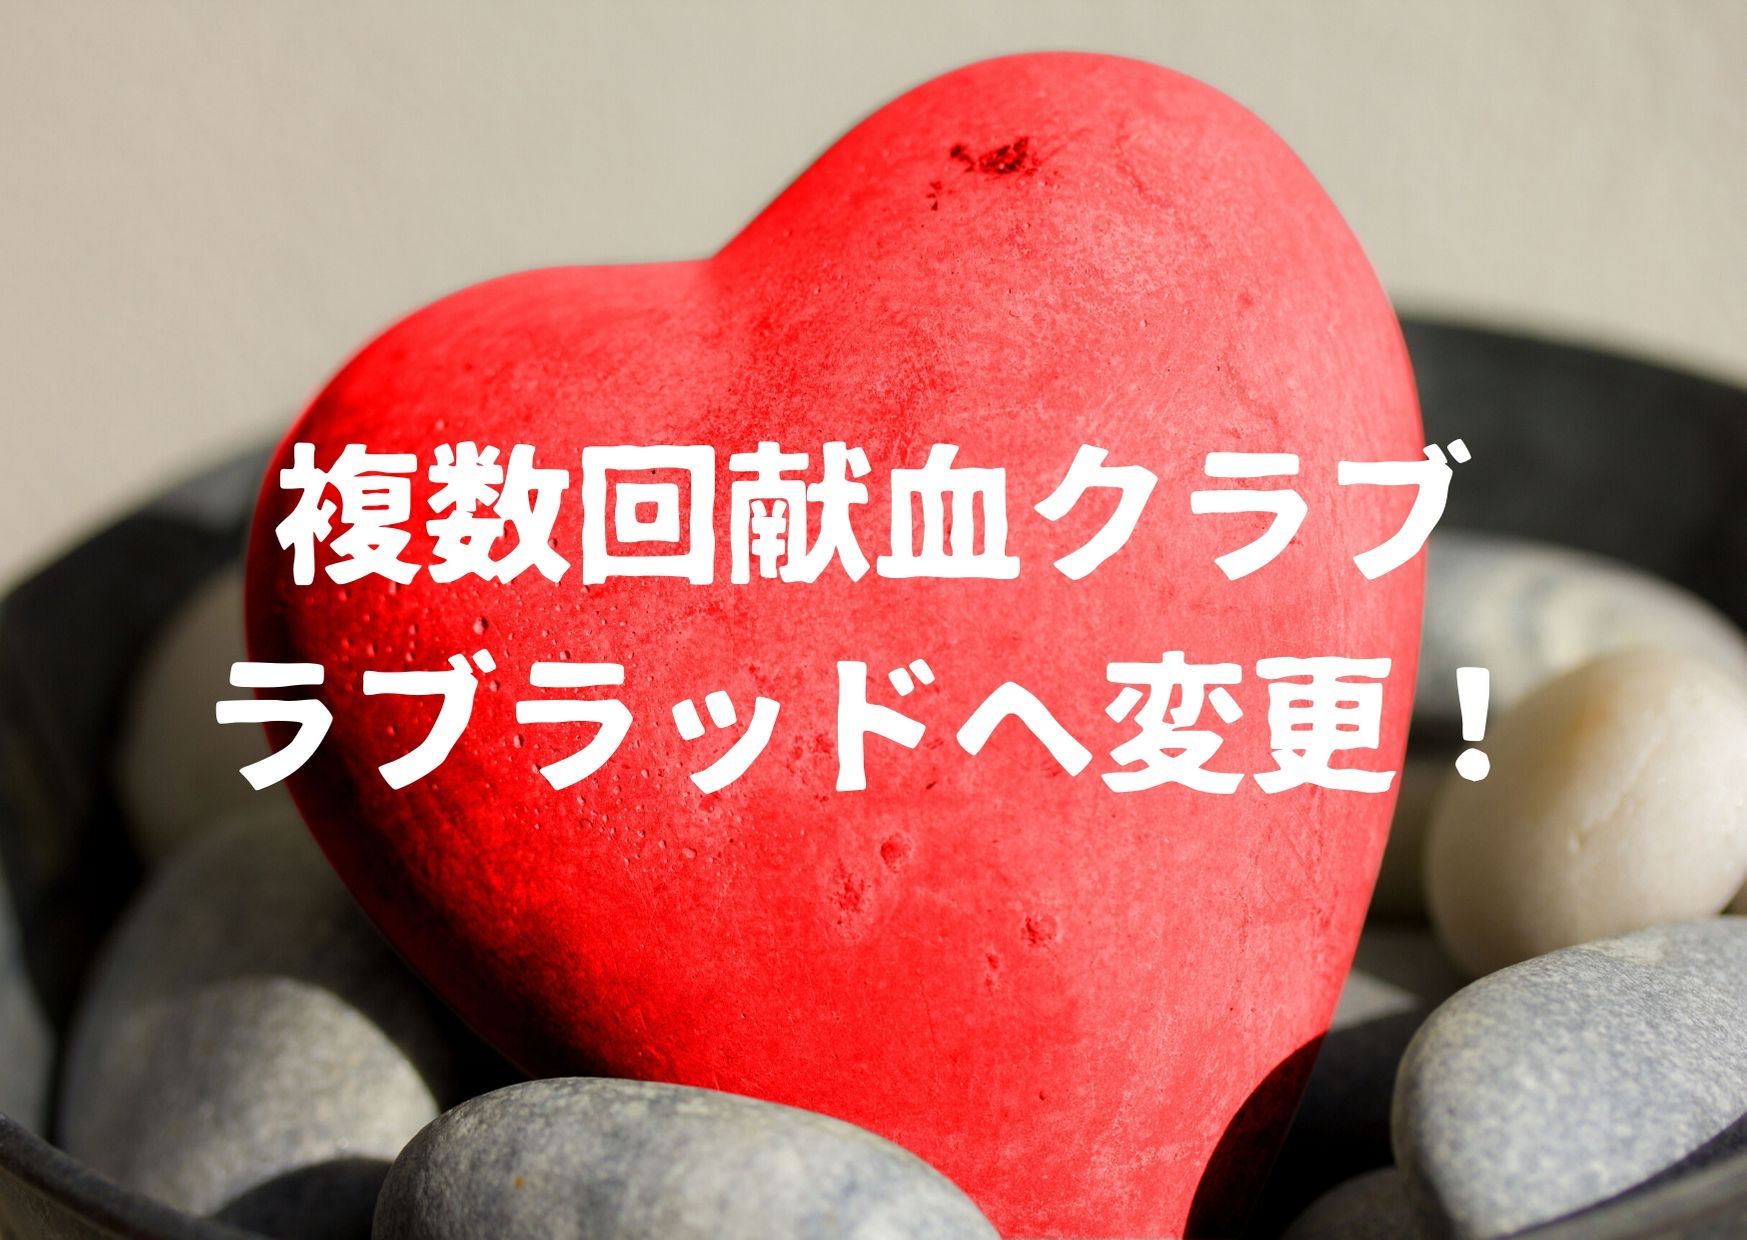 クラブ 献血 複数回献血クラブ 愛称募集コンテスト｜日本赤十字社のプレスリリース